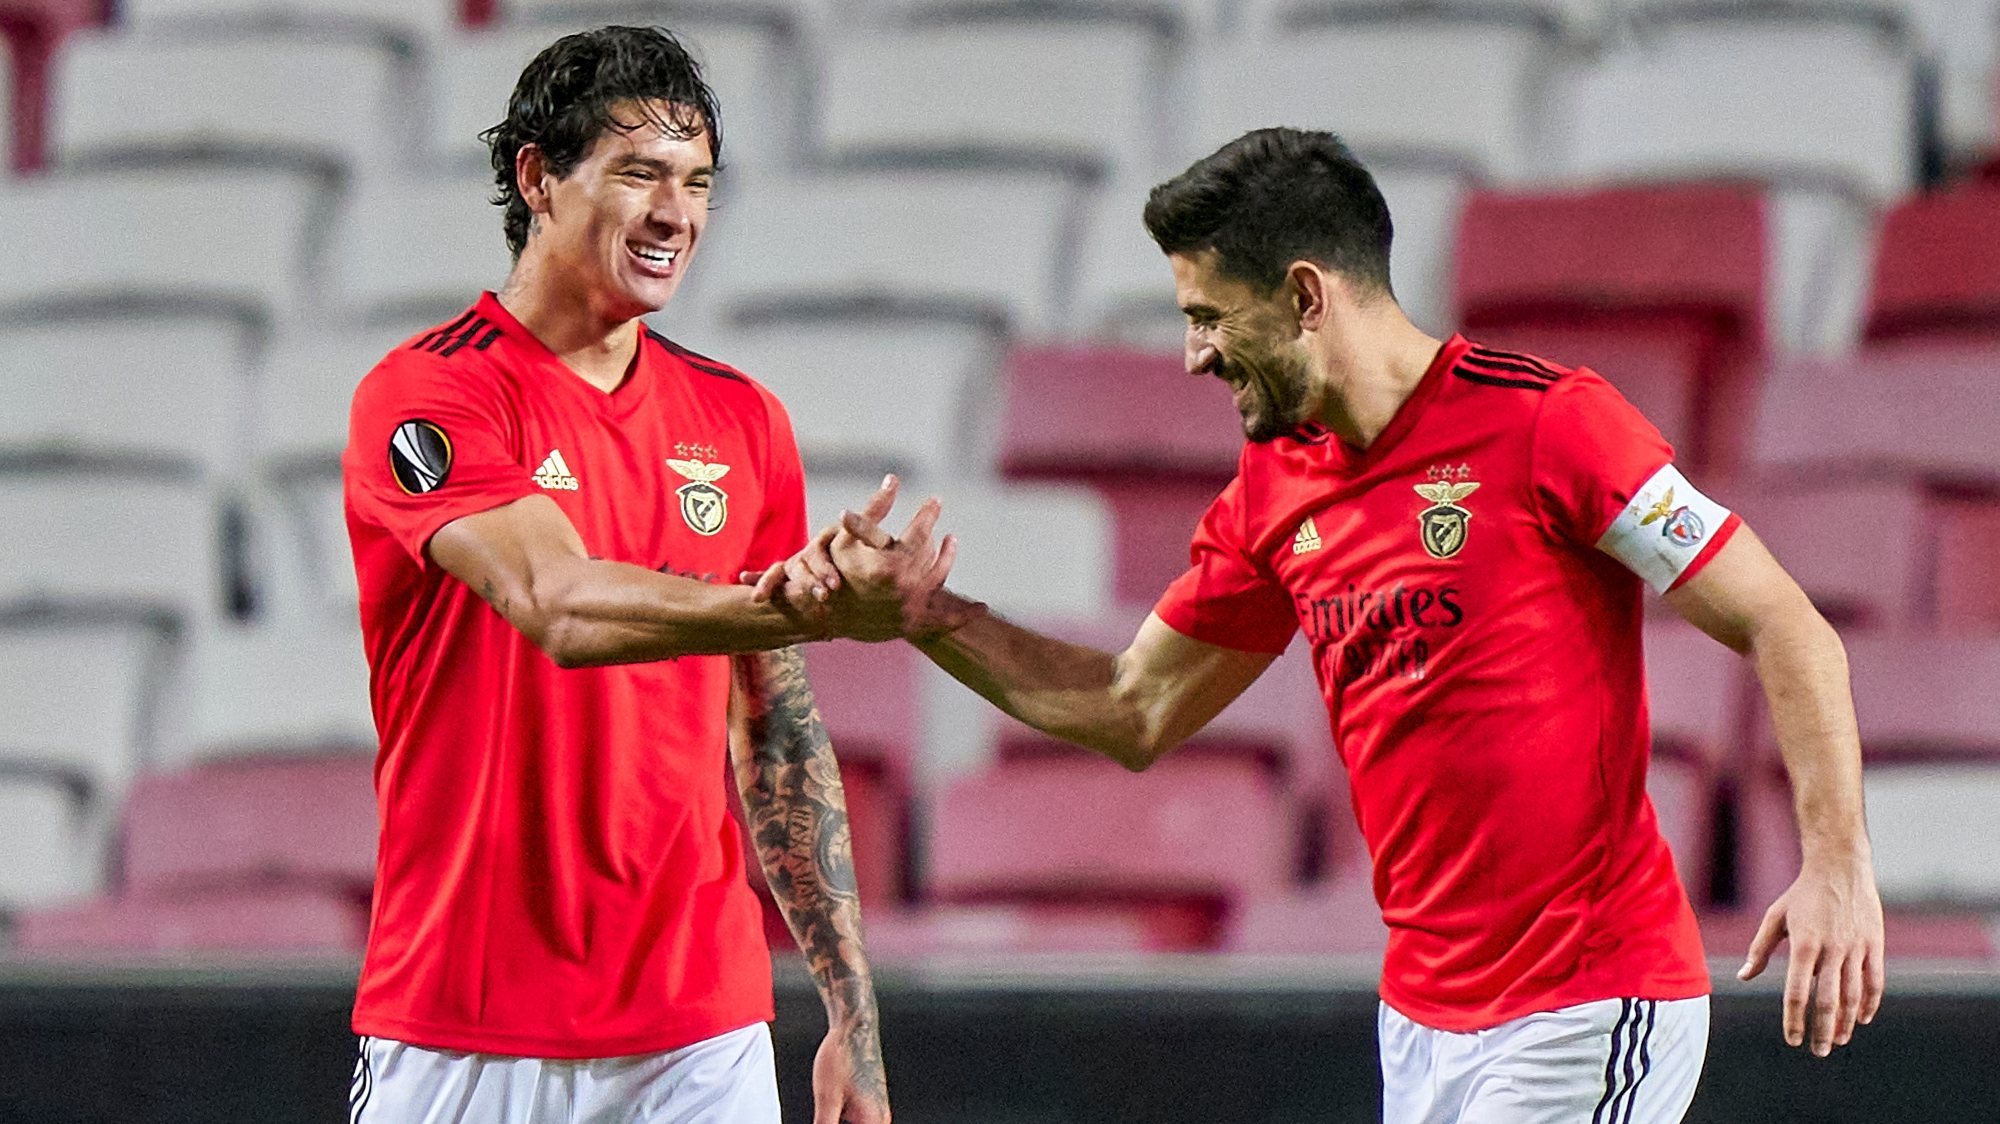 Darwin Núñez regressou à equipa com um golo após assistência de Pizzi, que também marcou na goleada do Benfica